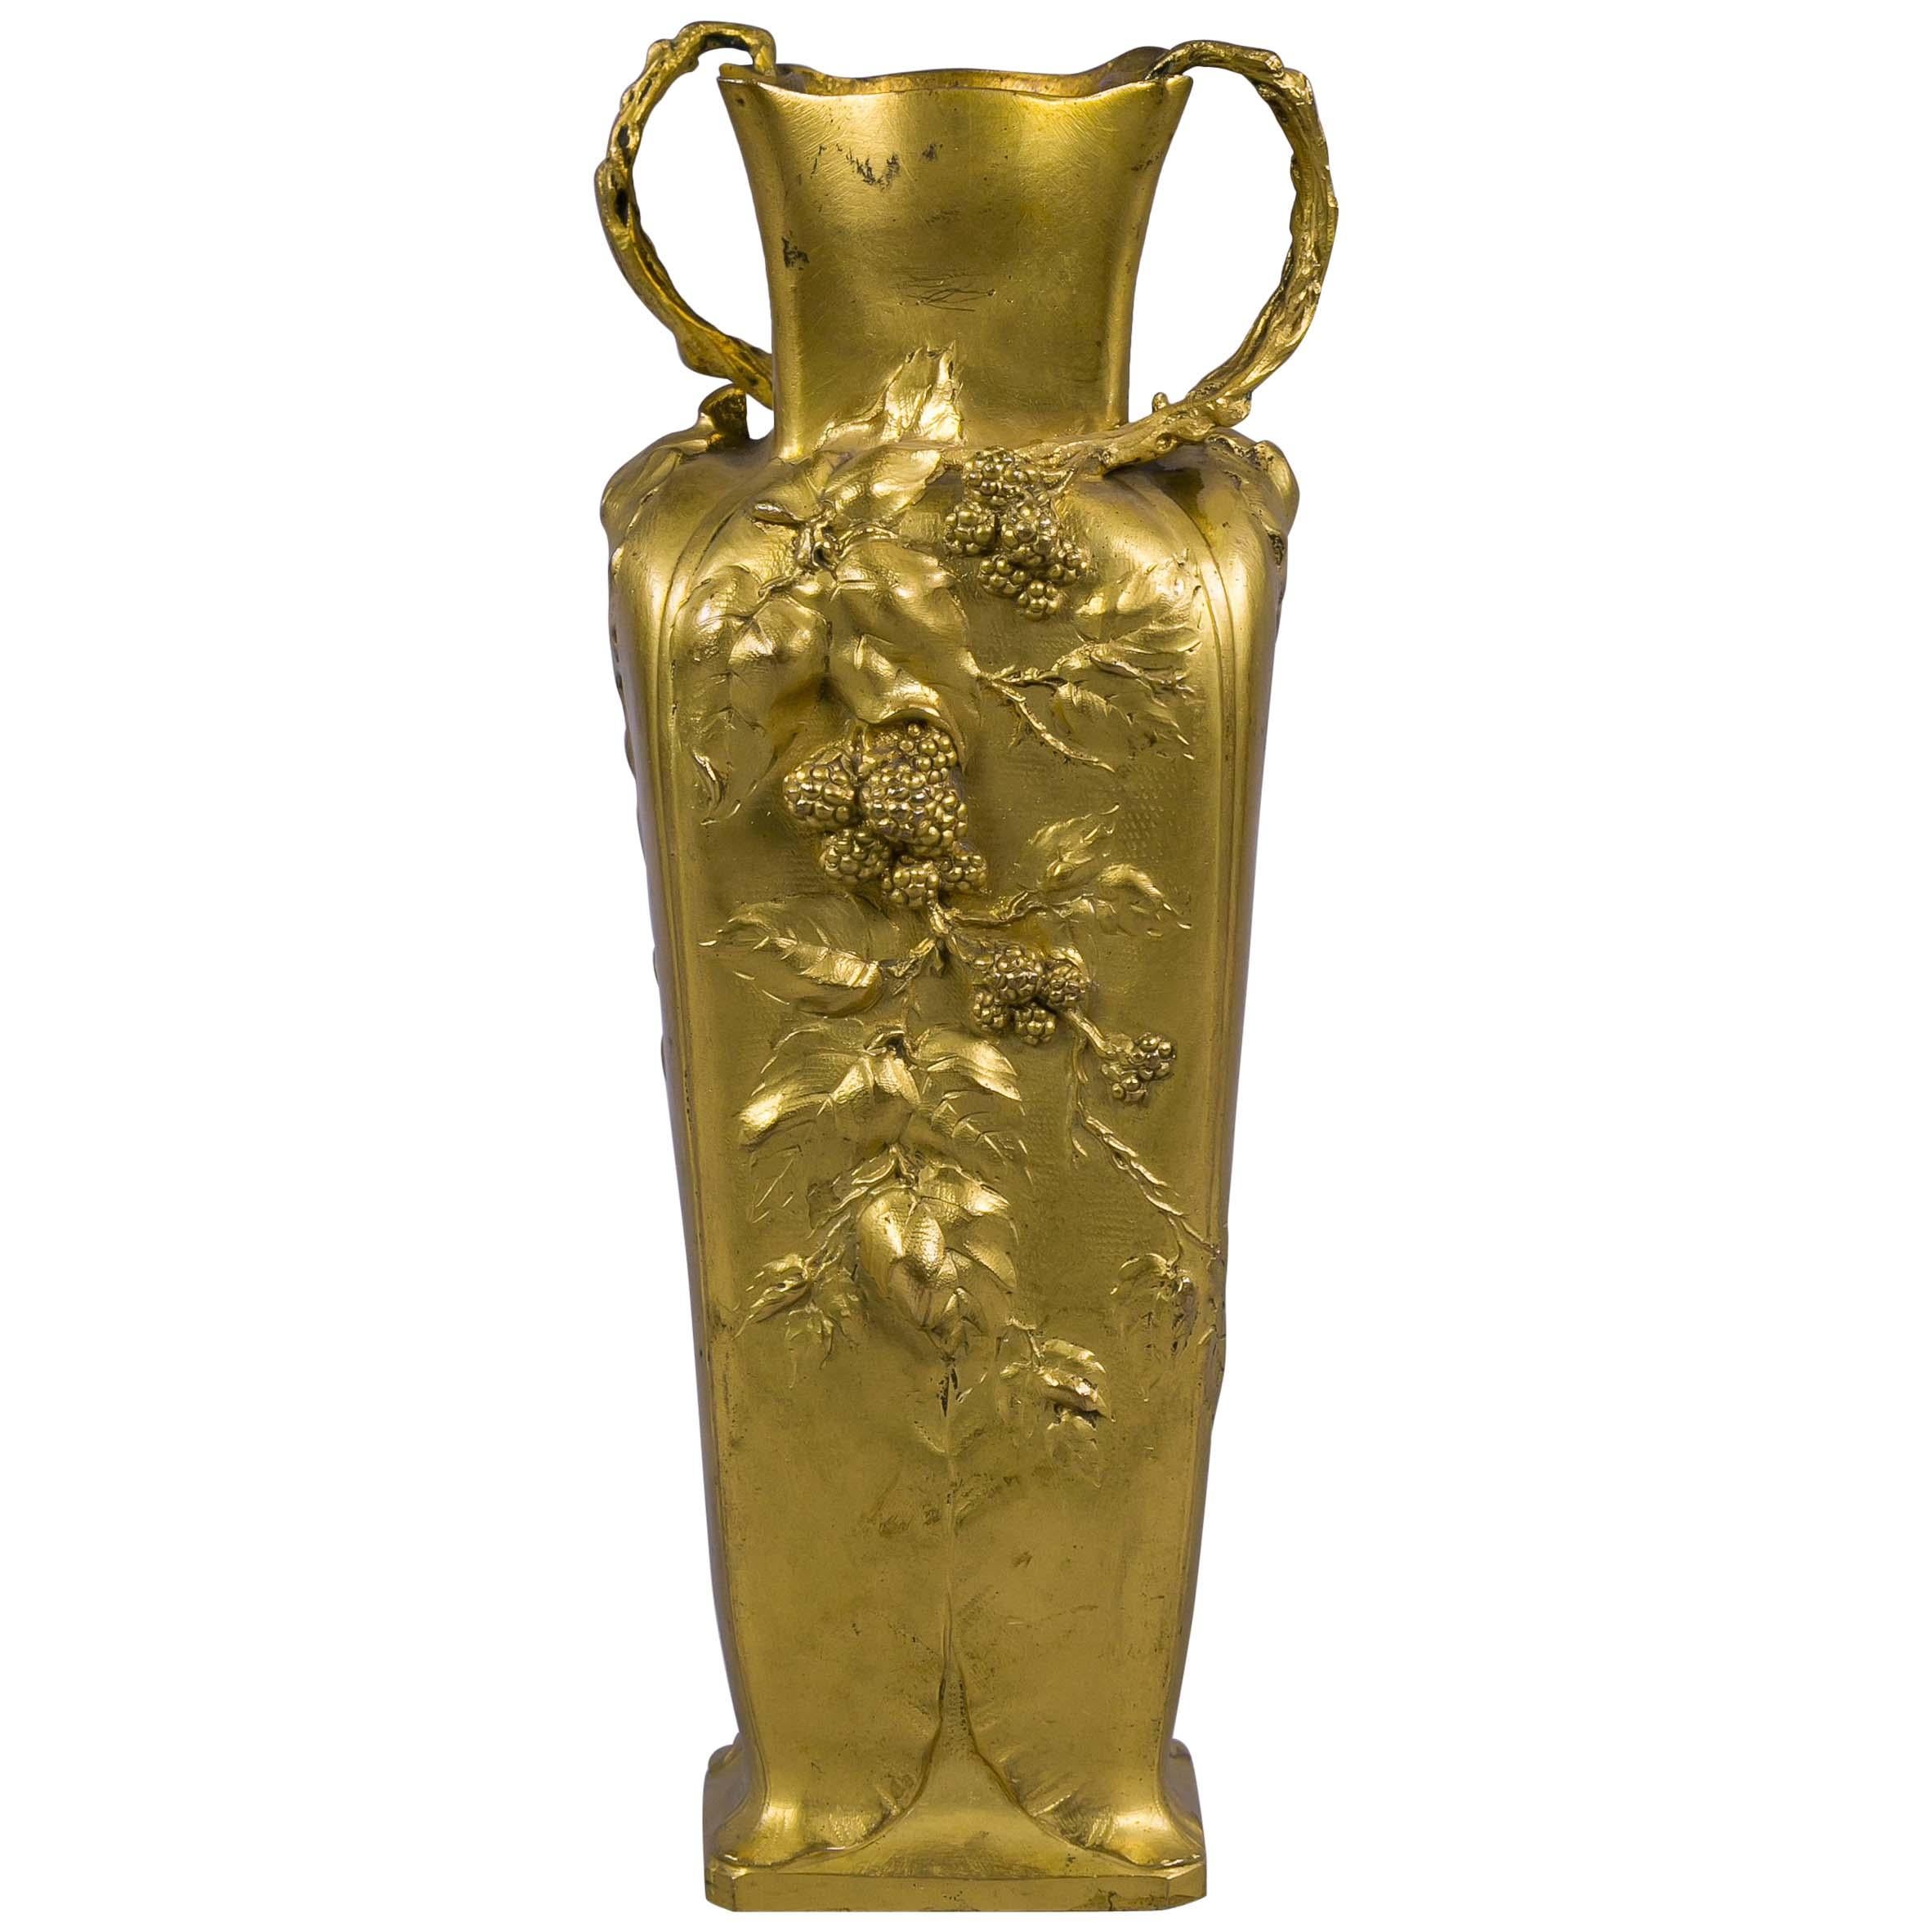 Vase en bronze doré de style Art nouveau français, vers 1880